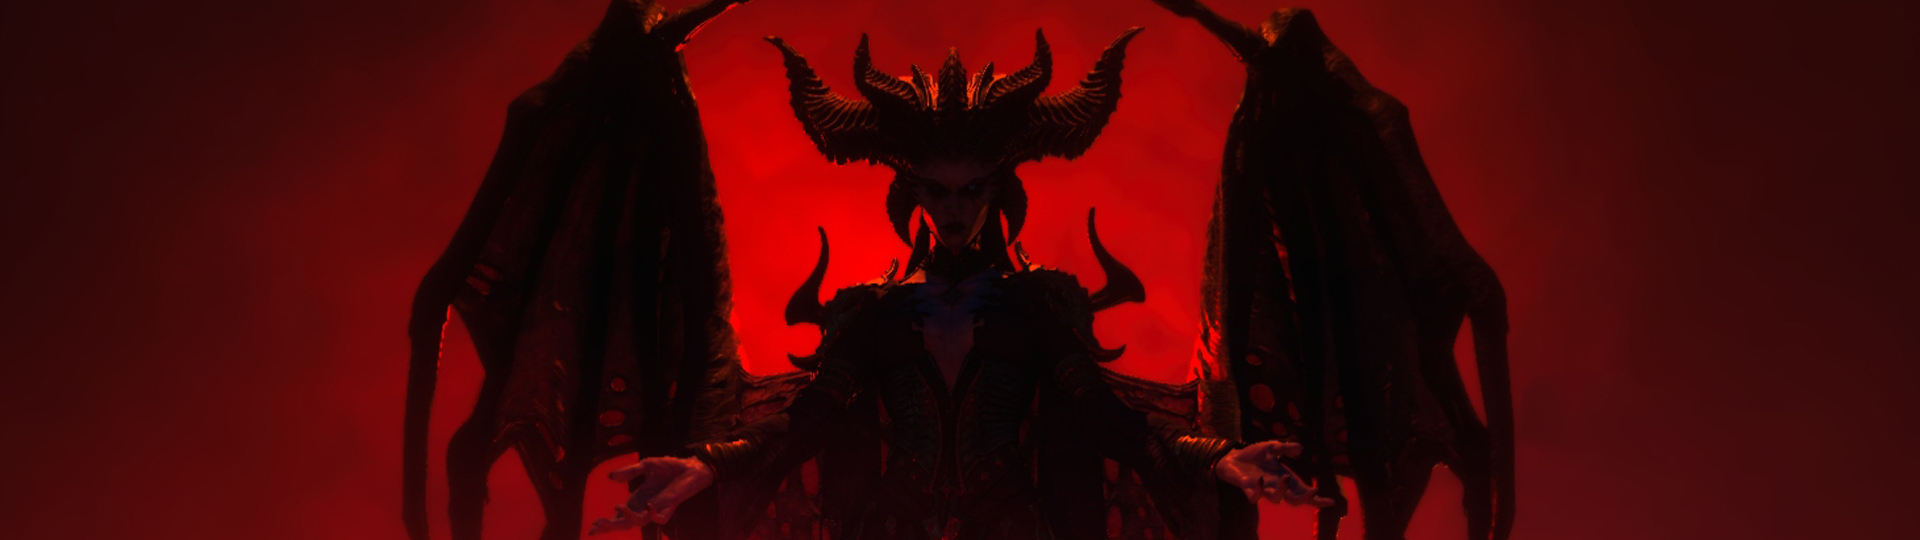 Další obří leak postihl Diablo 4 | Spekulace